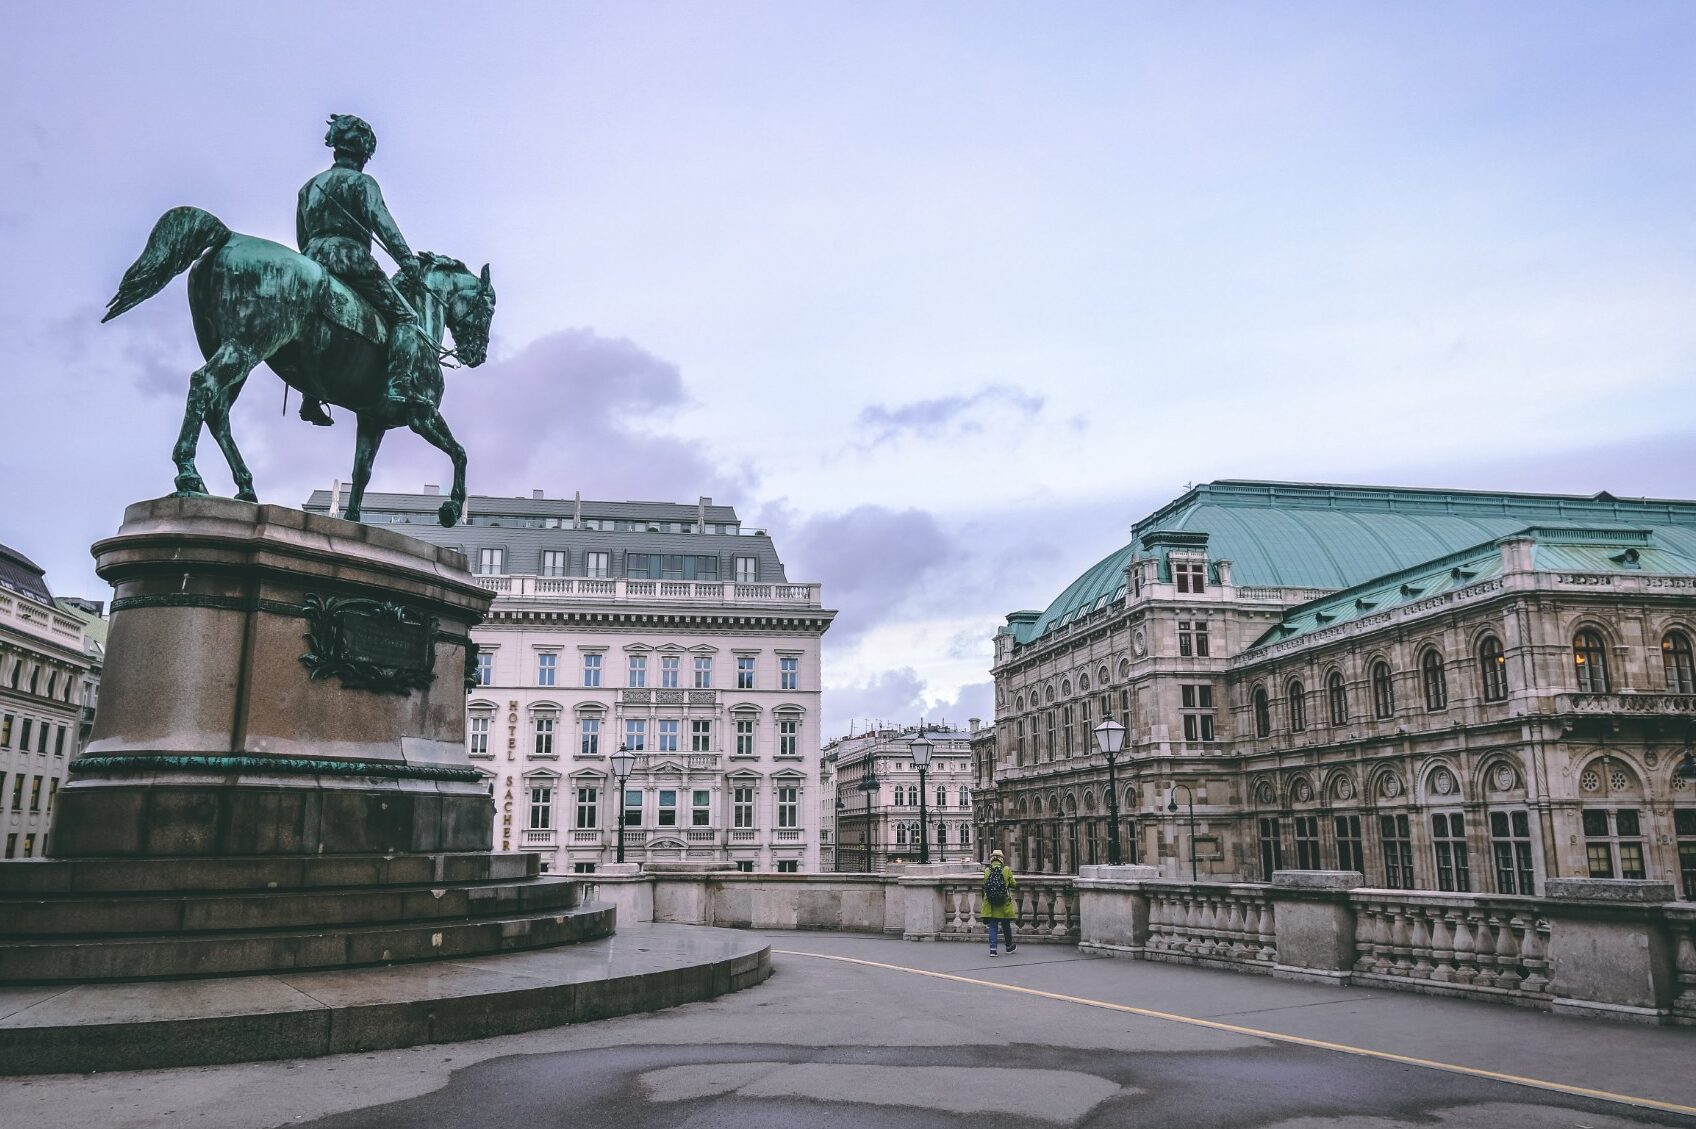 ZBOG INFLACIJE Beč će platiti kiriju onima koji žive u gradskim stanovima